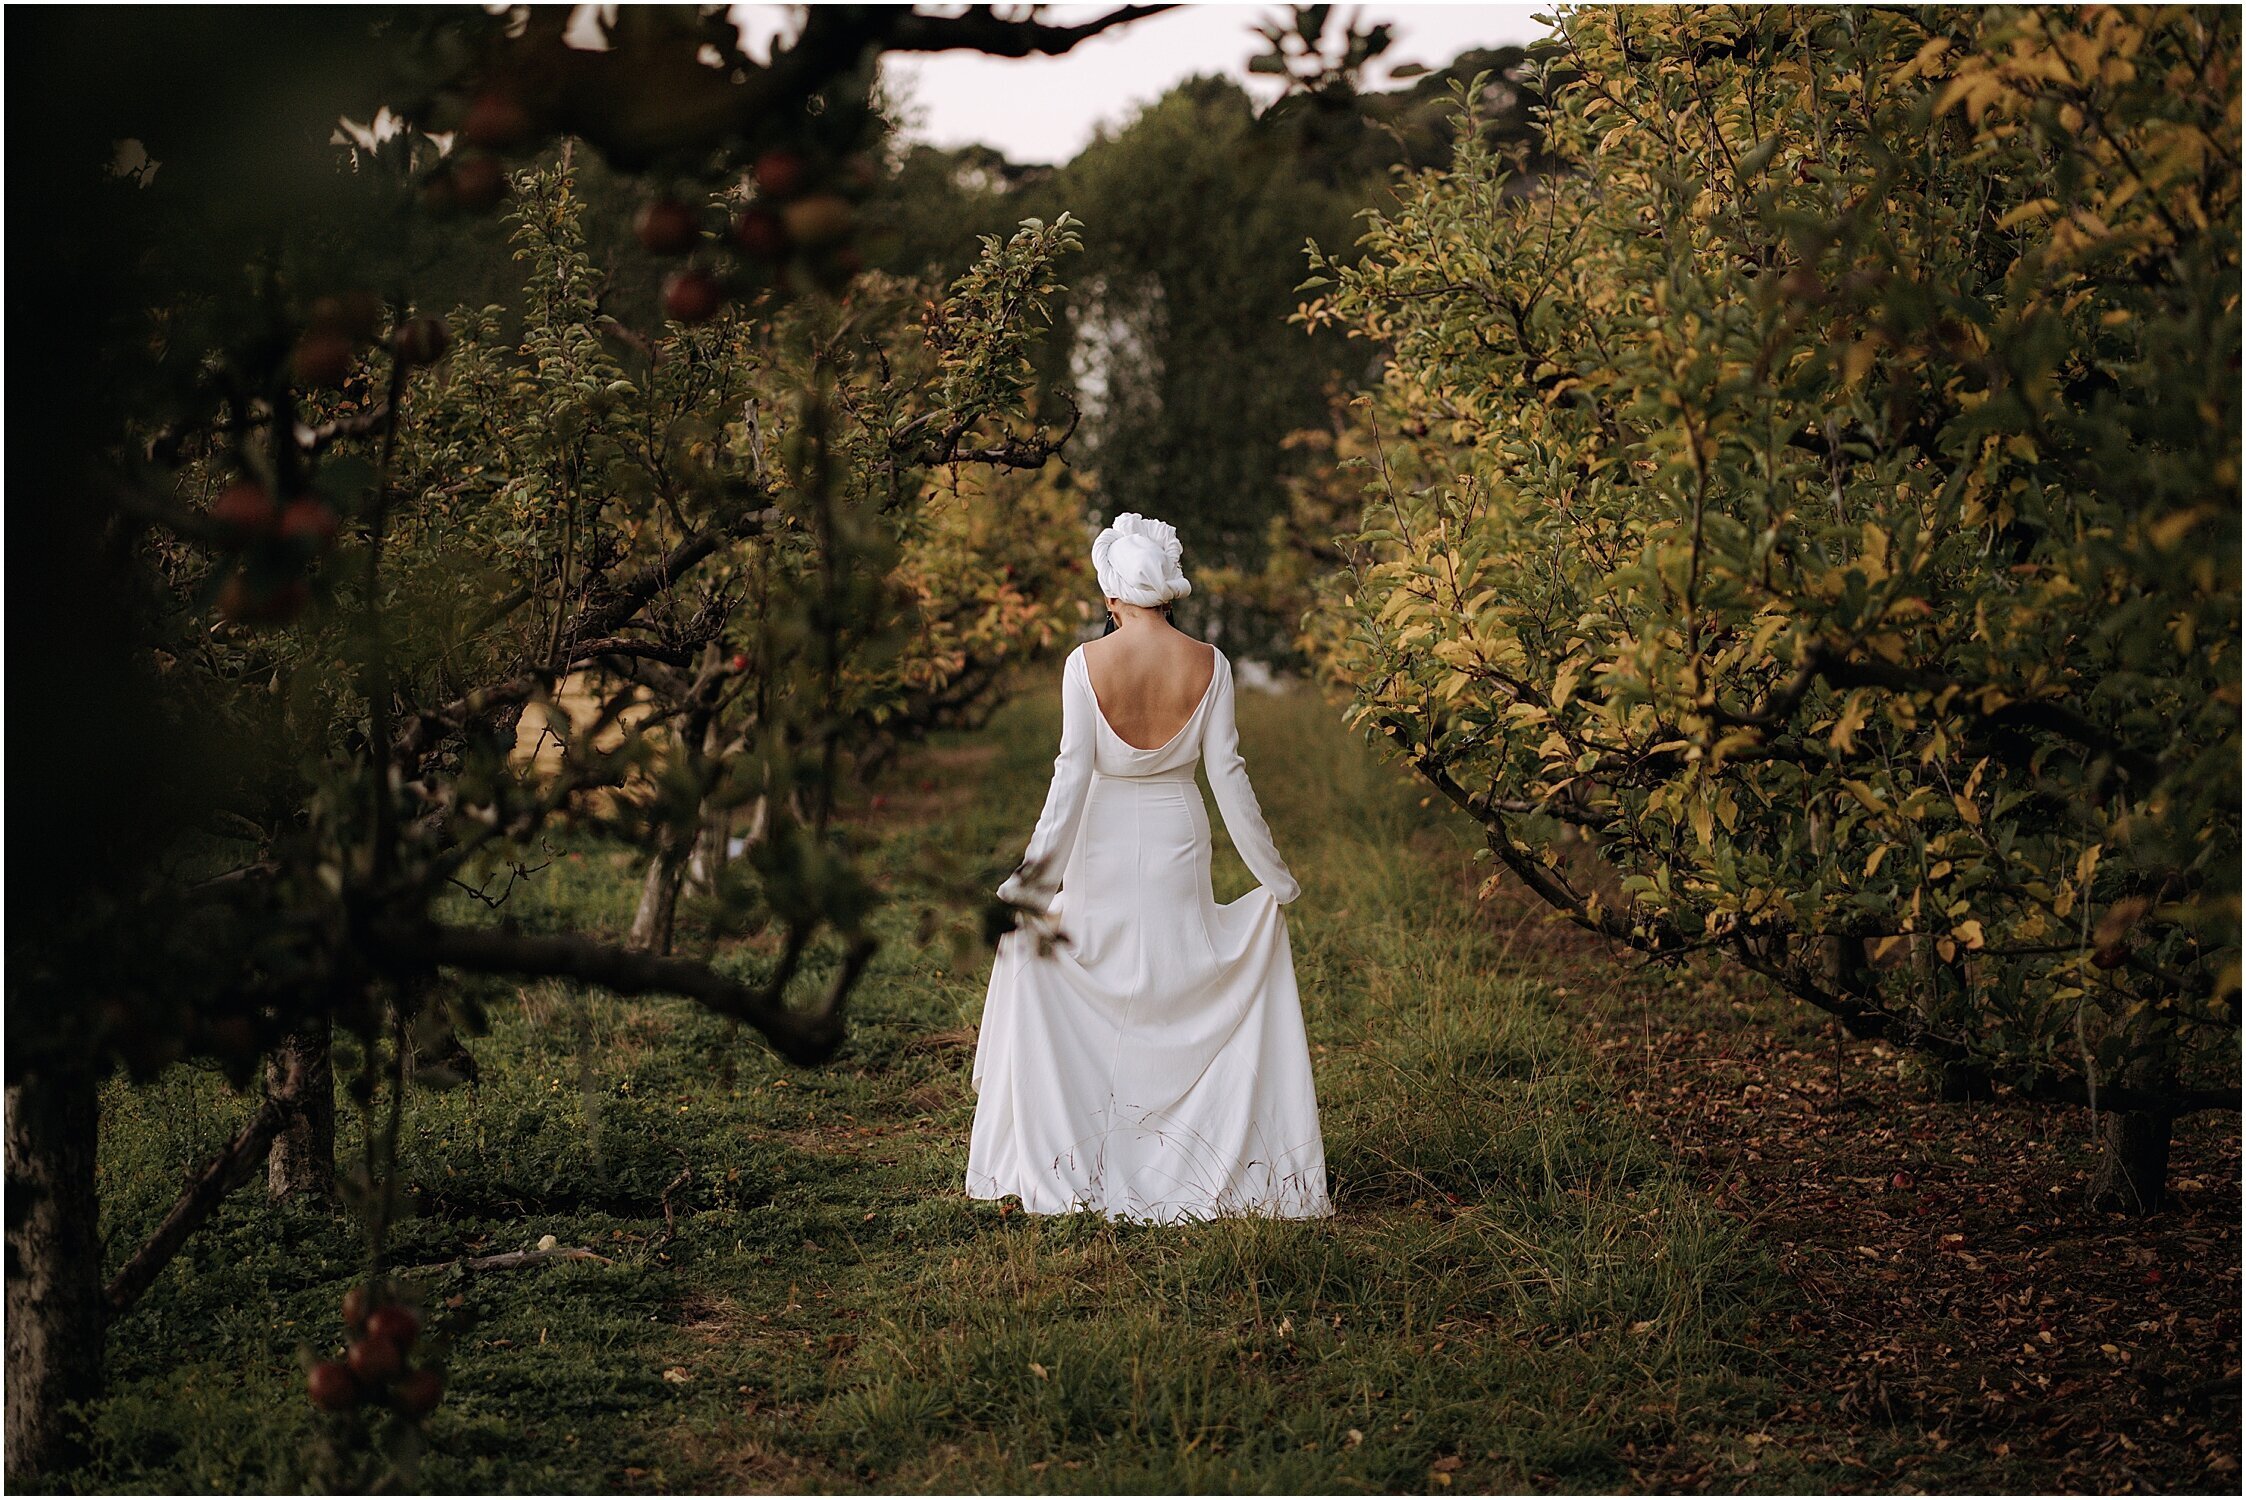 Zanda+Auckland+wedding+photographer+unique+portrait+photoshoot+ideas+autumn+winter+Windmill+apple+orchard+Coatesville+New+Zealand_22.jpeg